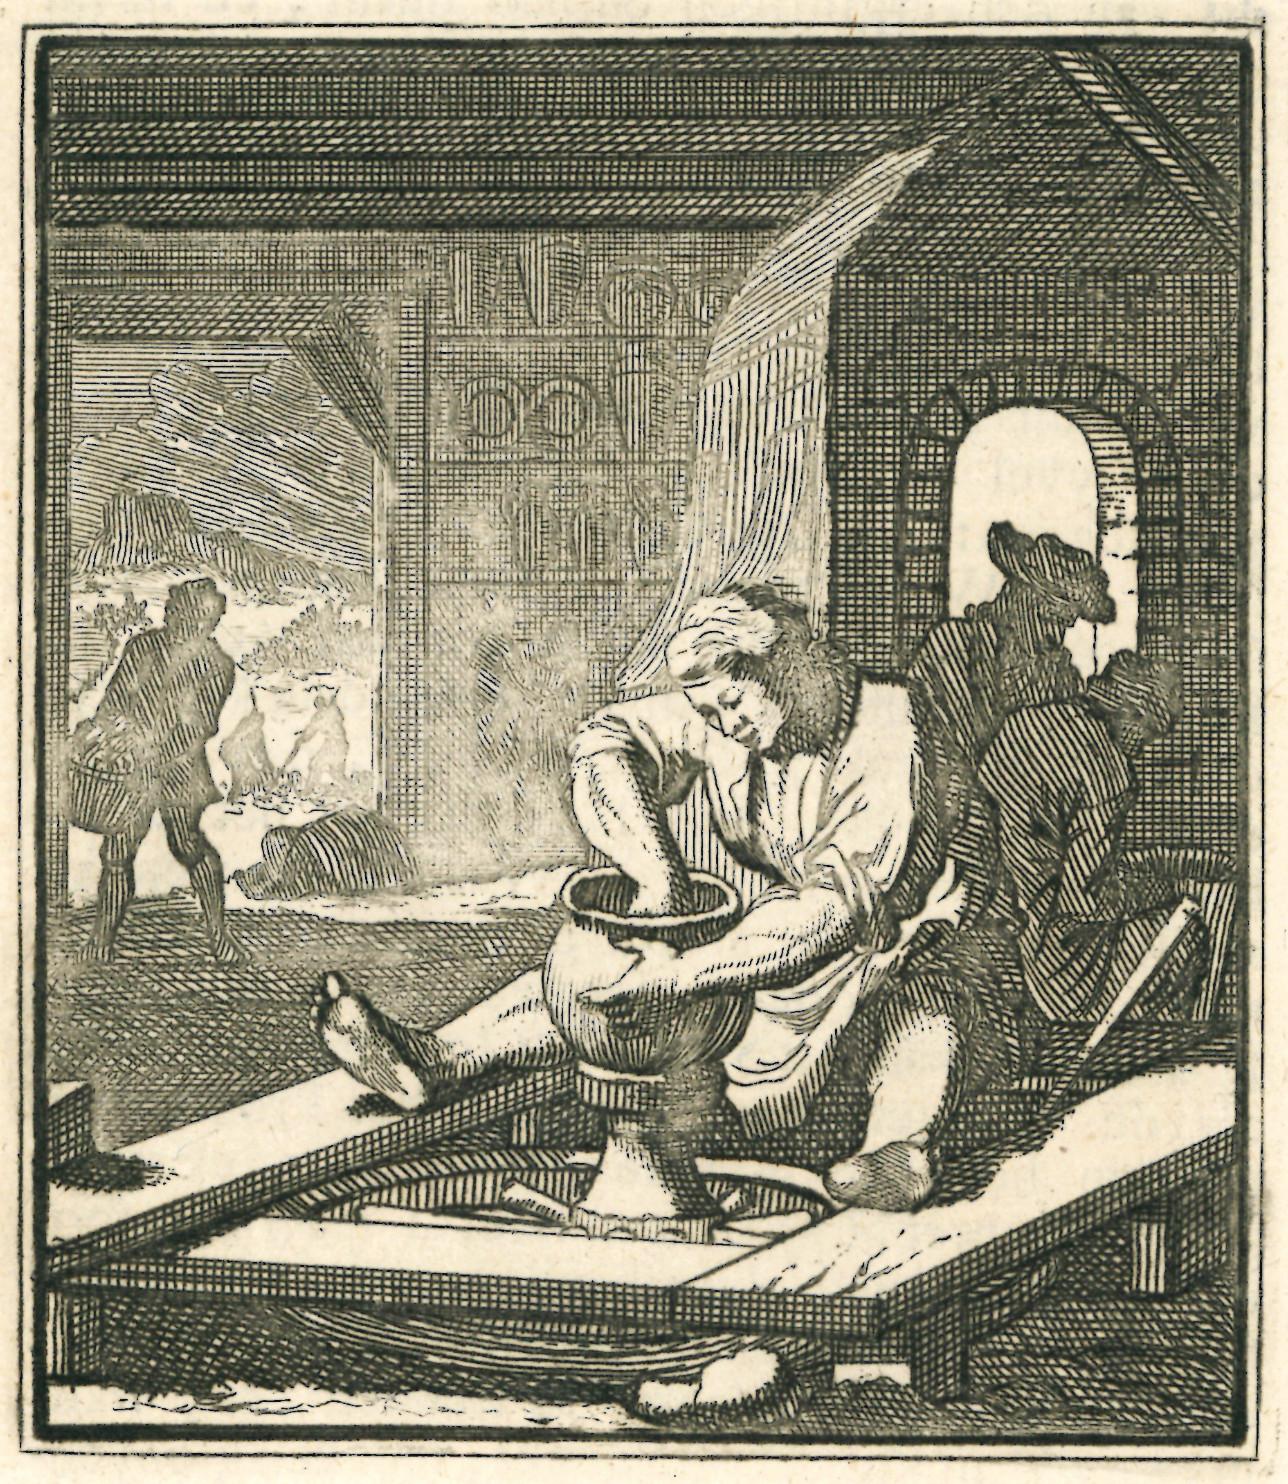 Das Bild zeigt eine Töpferwerkstatt im 17. Jahrhundert. Im Vordergrund sitzt ein Töpfer am Töpferrad und dreht einen großen Krug.